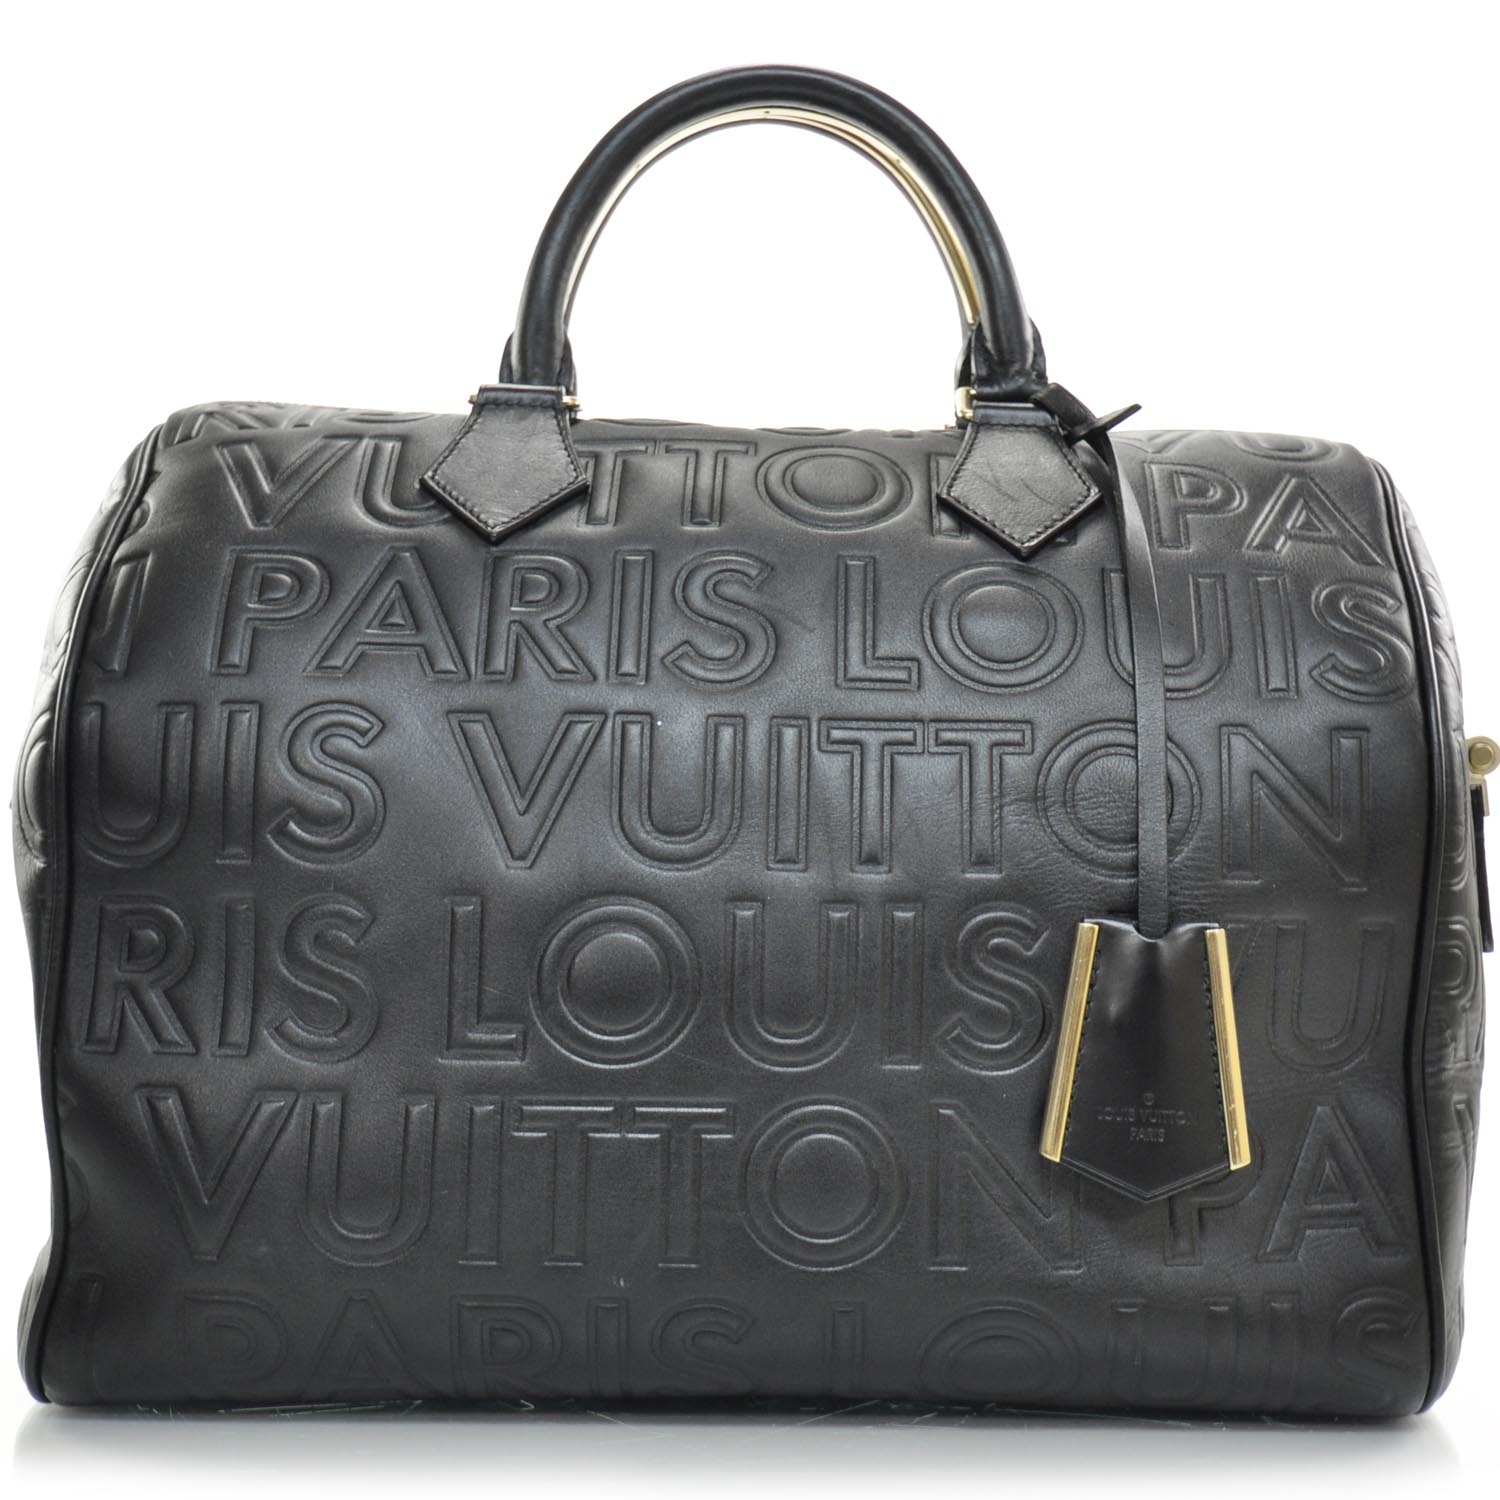 Ví cầm tay nam khóa số Louis Vuitton